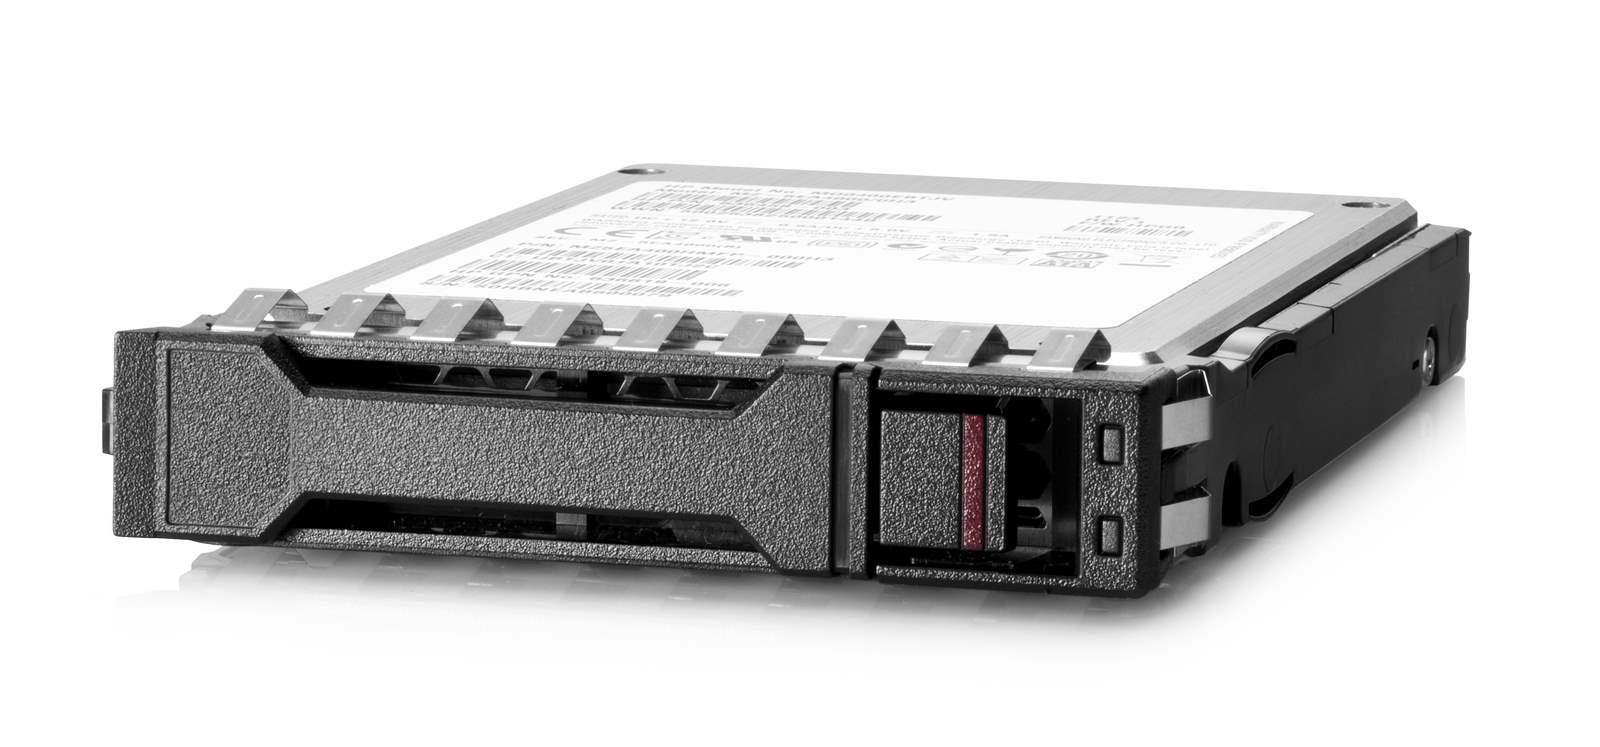 HPE 960GB SAS 12G Read Intensive SFF BC Value SAS Multi Vendor SSD0 